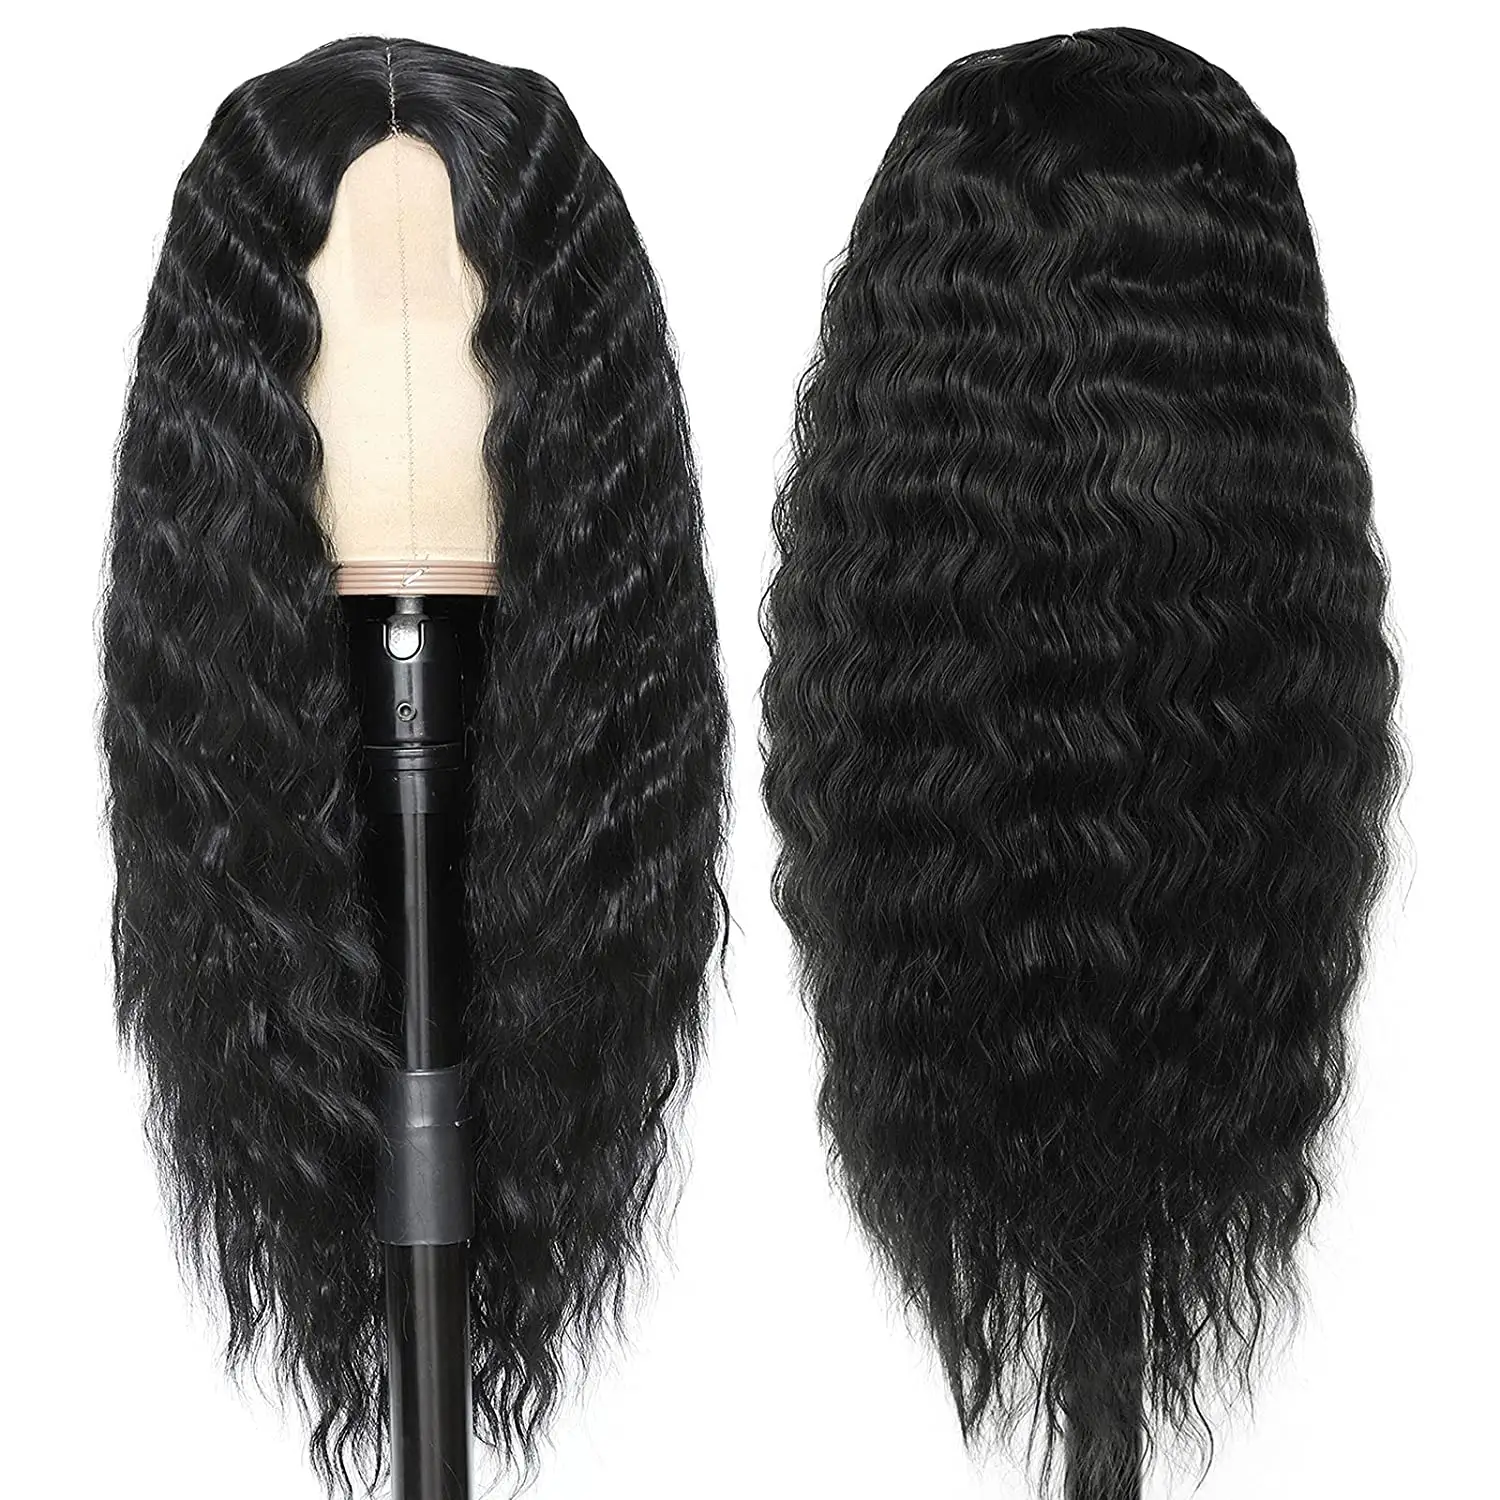 G & T peruk 6 renkler isıya dayanıklı sentetik kıvırcık peruk siyah uzun derin dalga dantel ön peruk siyah için kadın